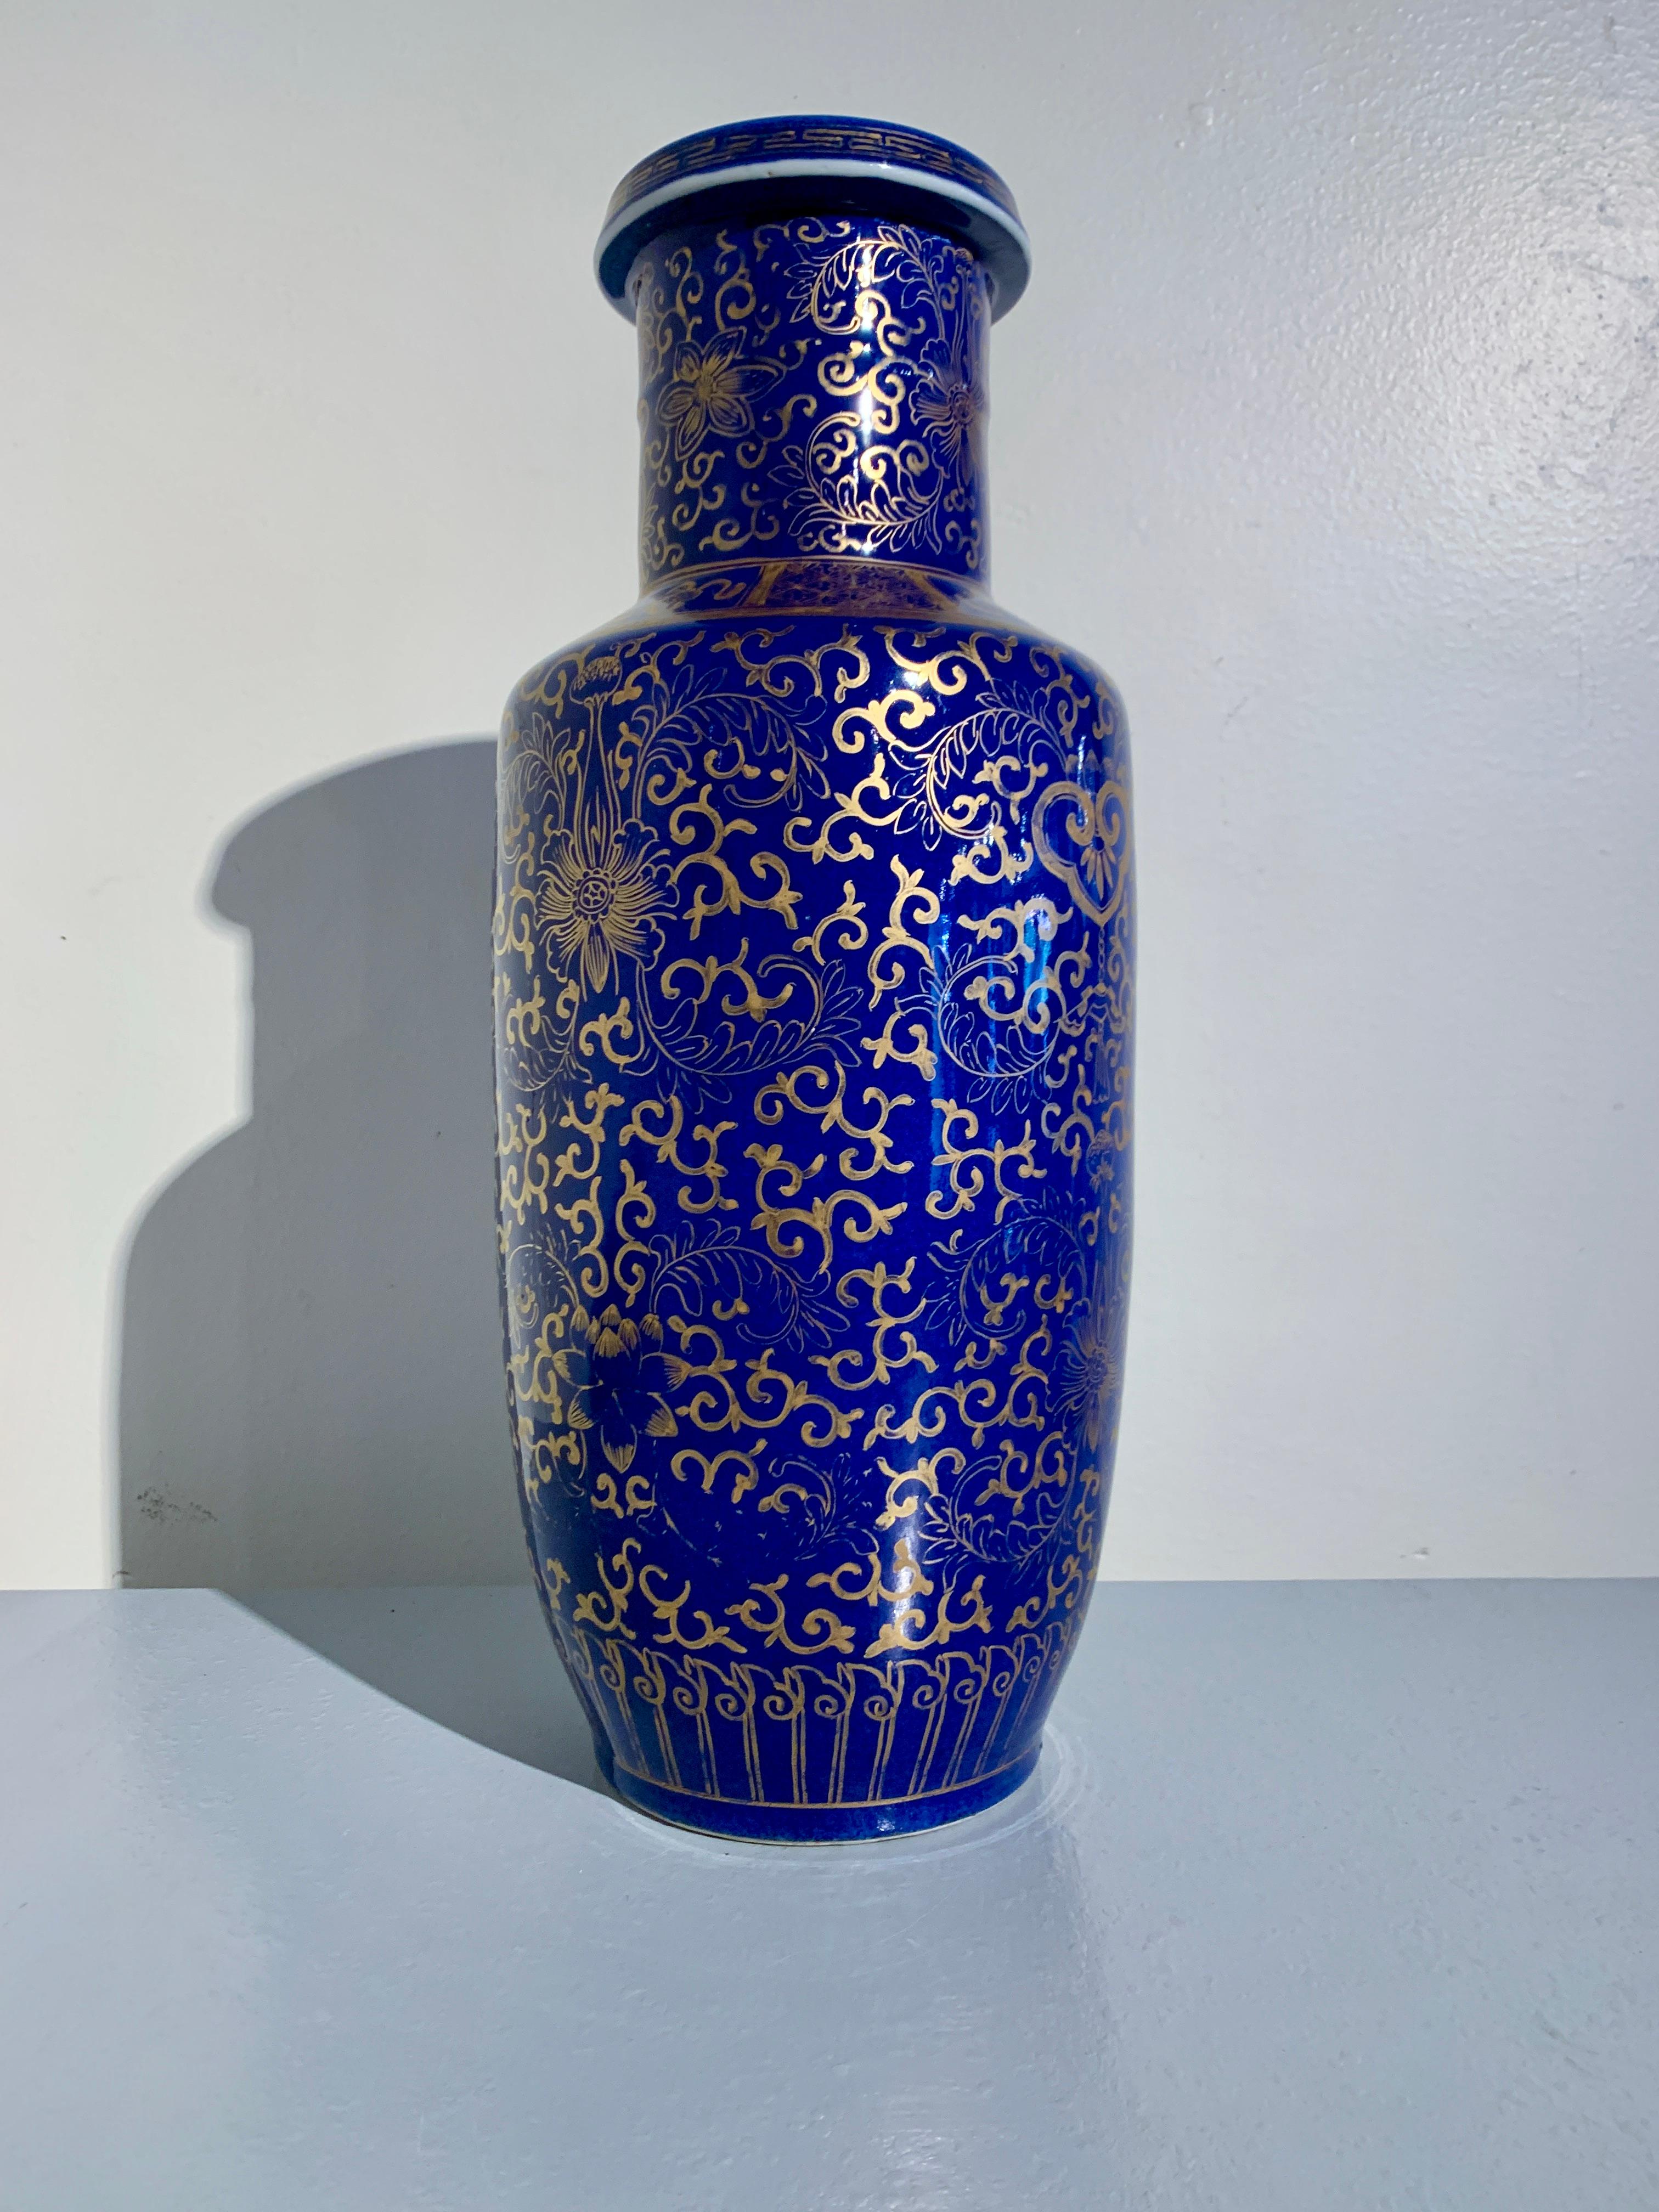 Impressionnant et opulent vase rouleau chinois en porcelaine émaillée bleu poudre à décor peint en doré, dynastie Qing très tardive, vers 1900, Chine. 

Le vase est émaillé d'un bleu cobalt riche et profond, connu sous le nom de bleu de poudre, et